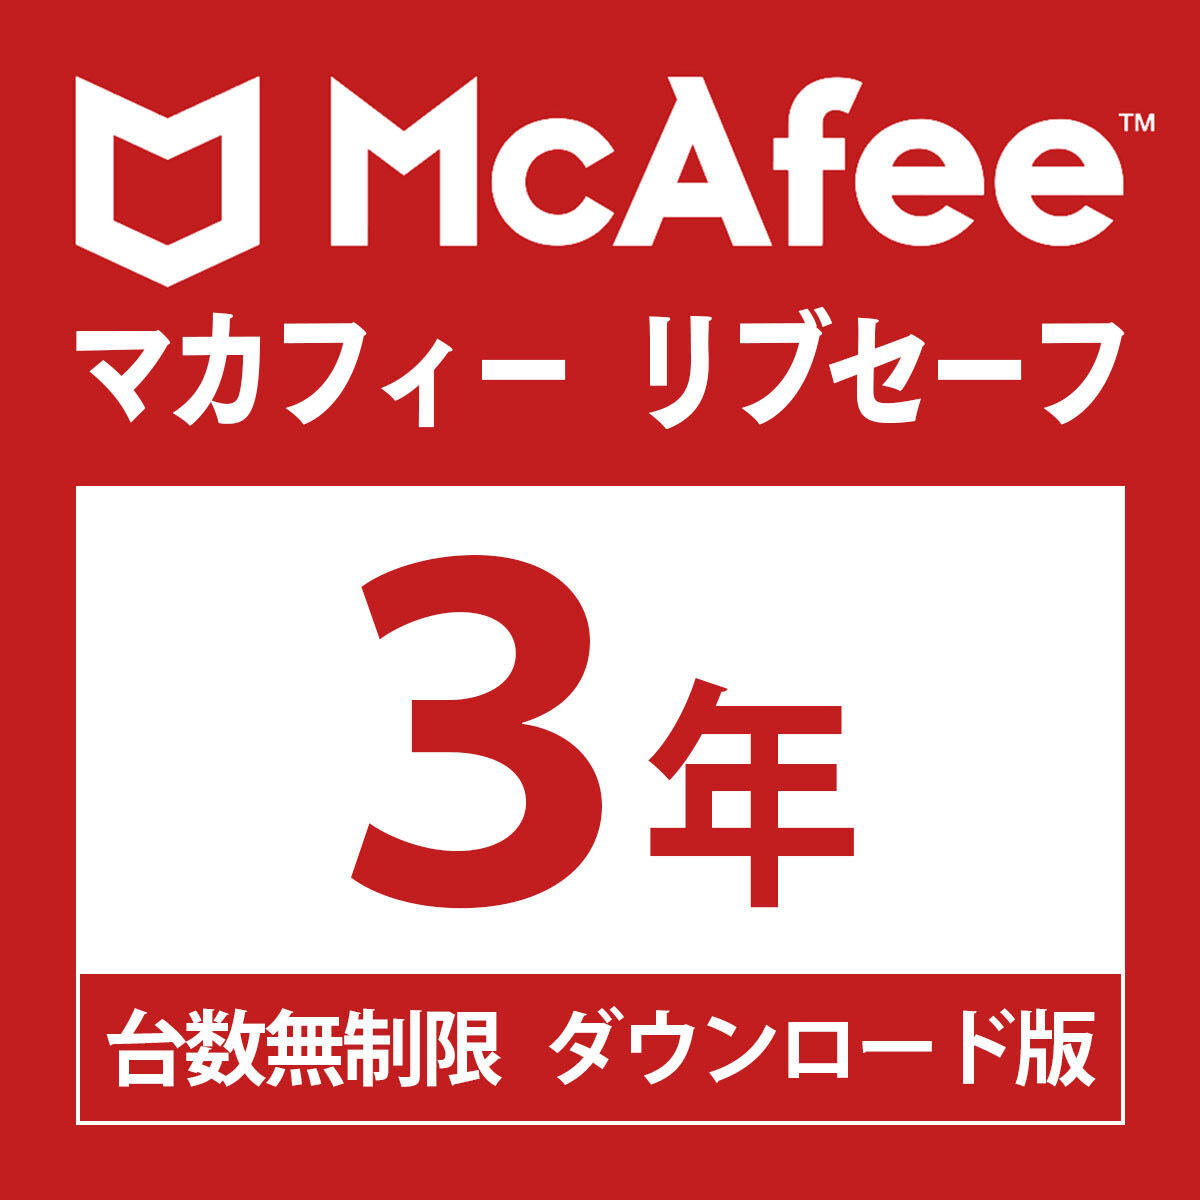 McAfee McAfee ребра safe шт. число безграничный 3 год * загрузка версия Win/Mac/Android/iOS соответствует u il s меры программное обеспечение для безопасности 